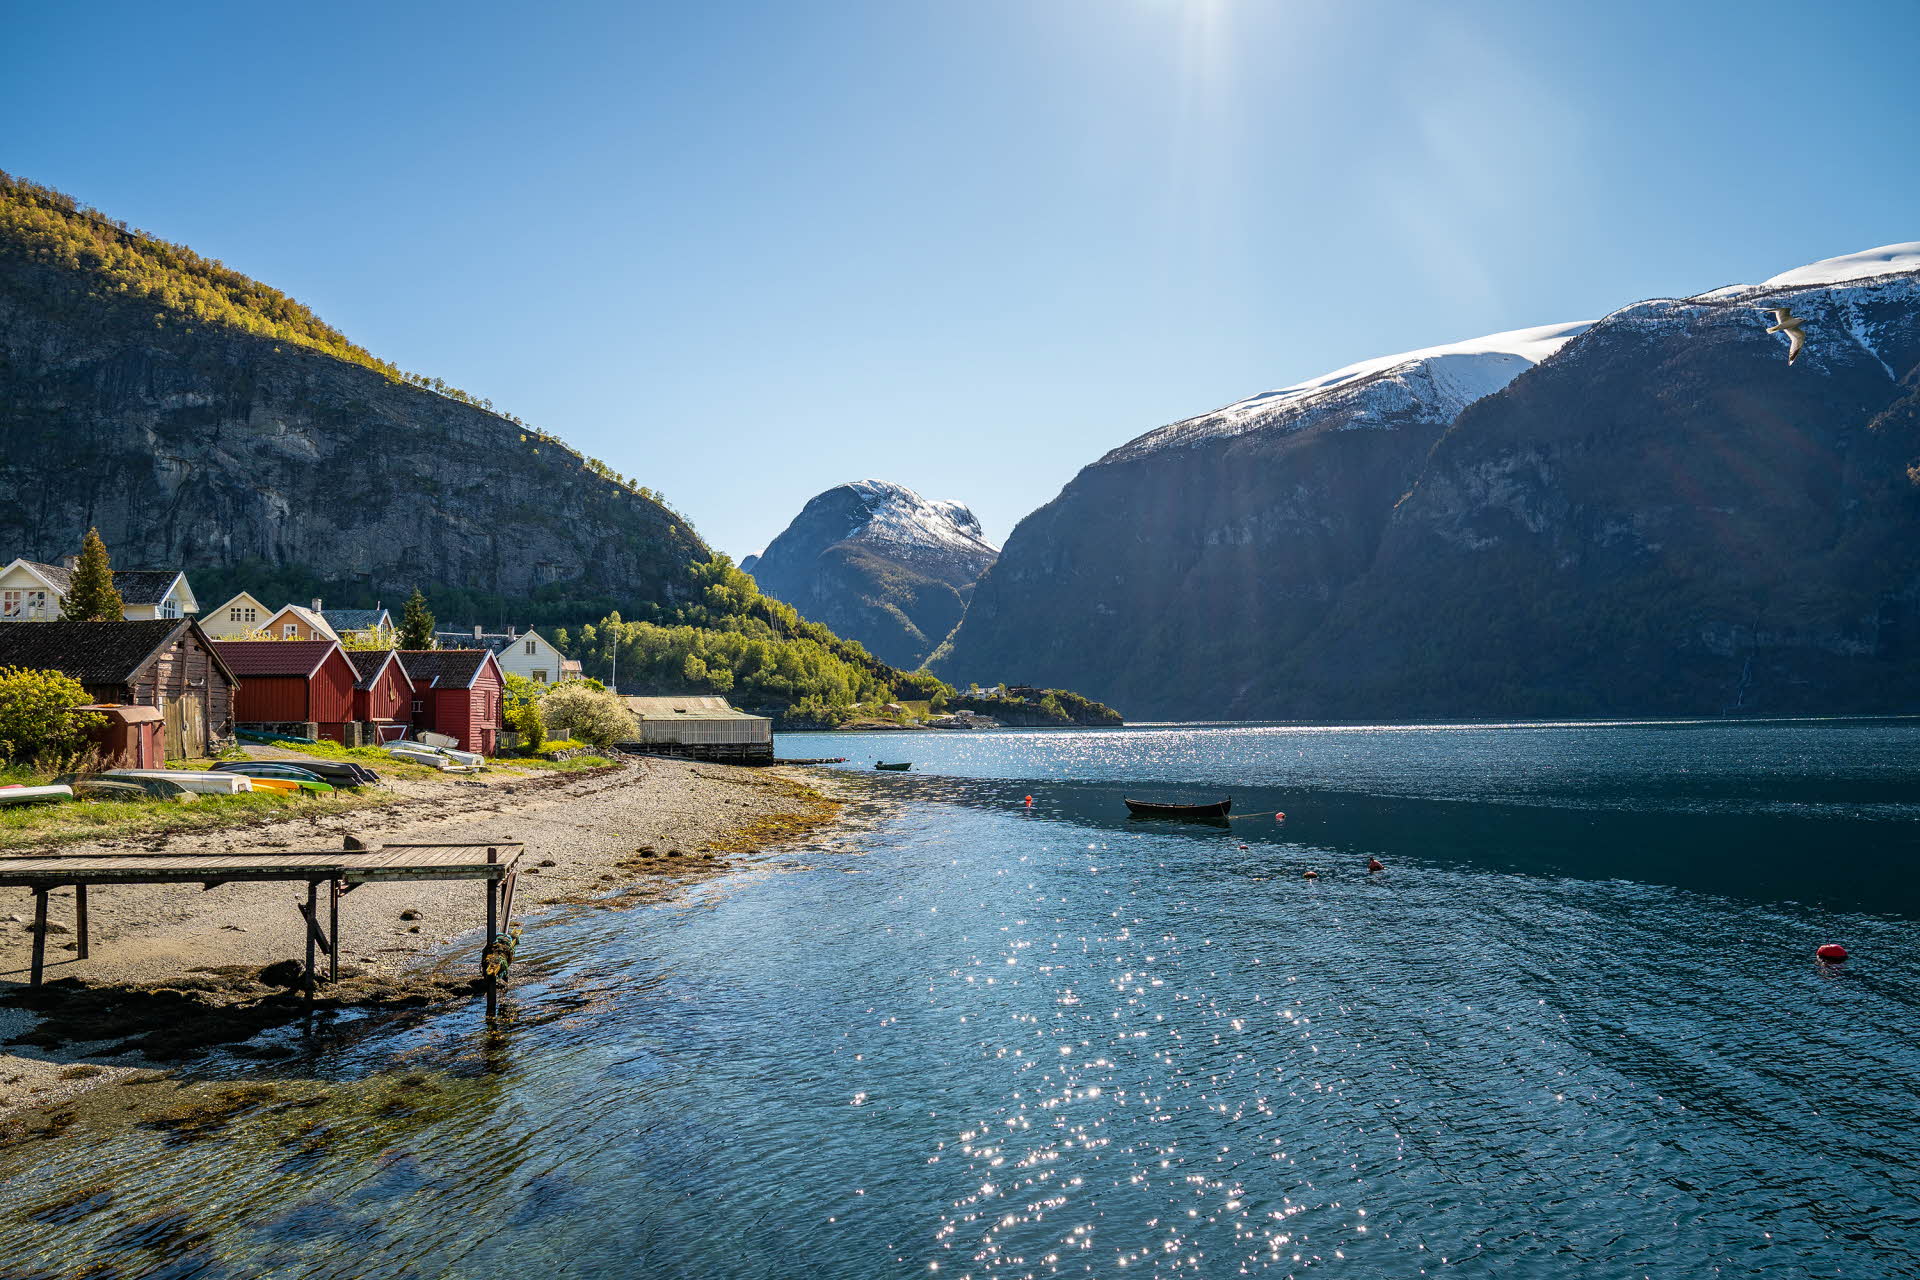 Maison de pêcheurs sur le rivage de l’Aurlandsfjord, inscrit au patrimoine mondial de l’UNESCO, photo prise en plein été. Montagnes fertiles avec sommets enneigés